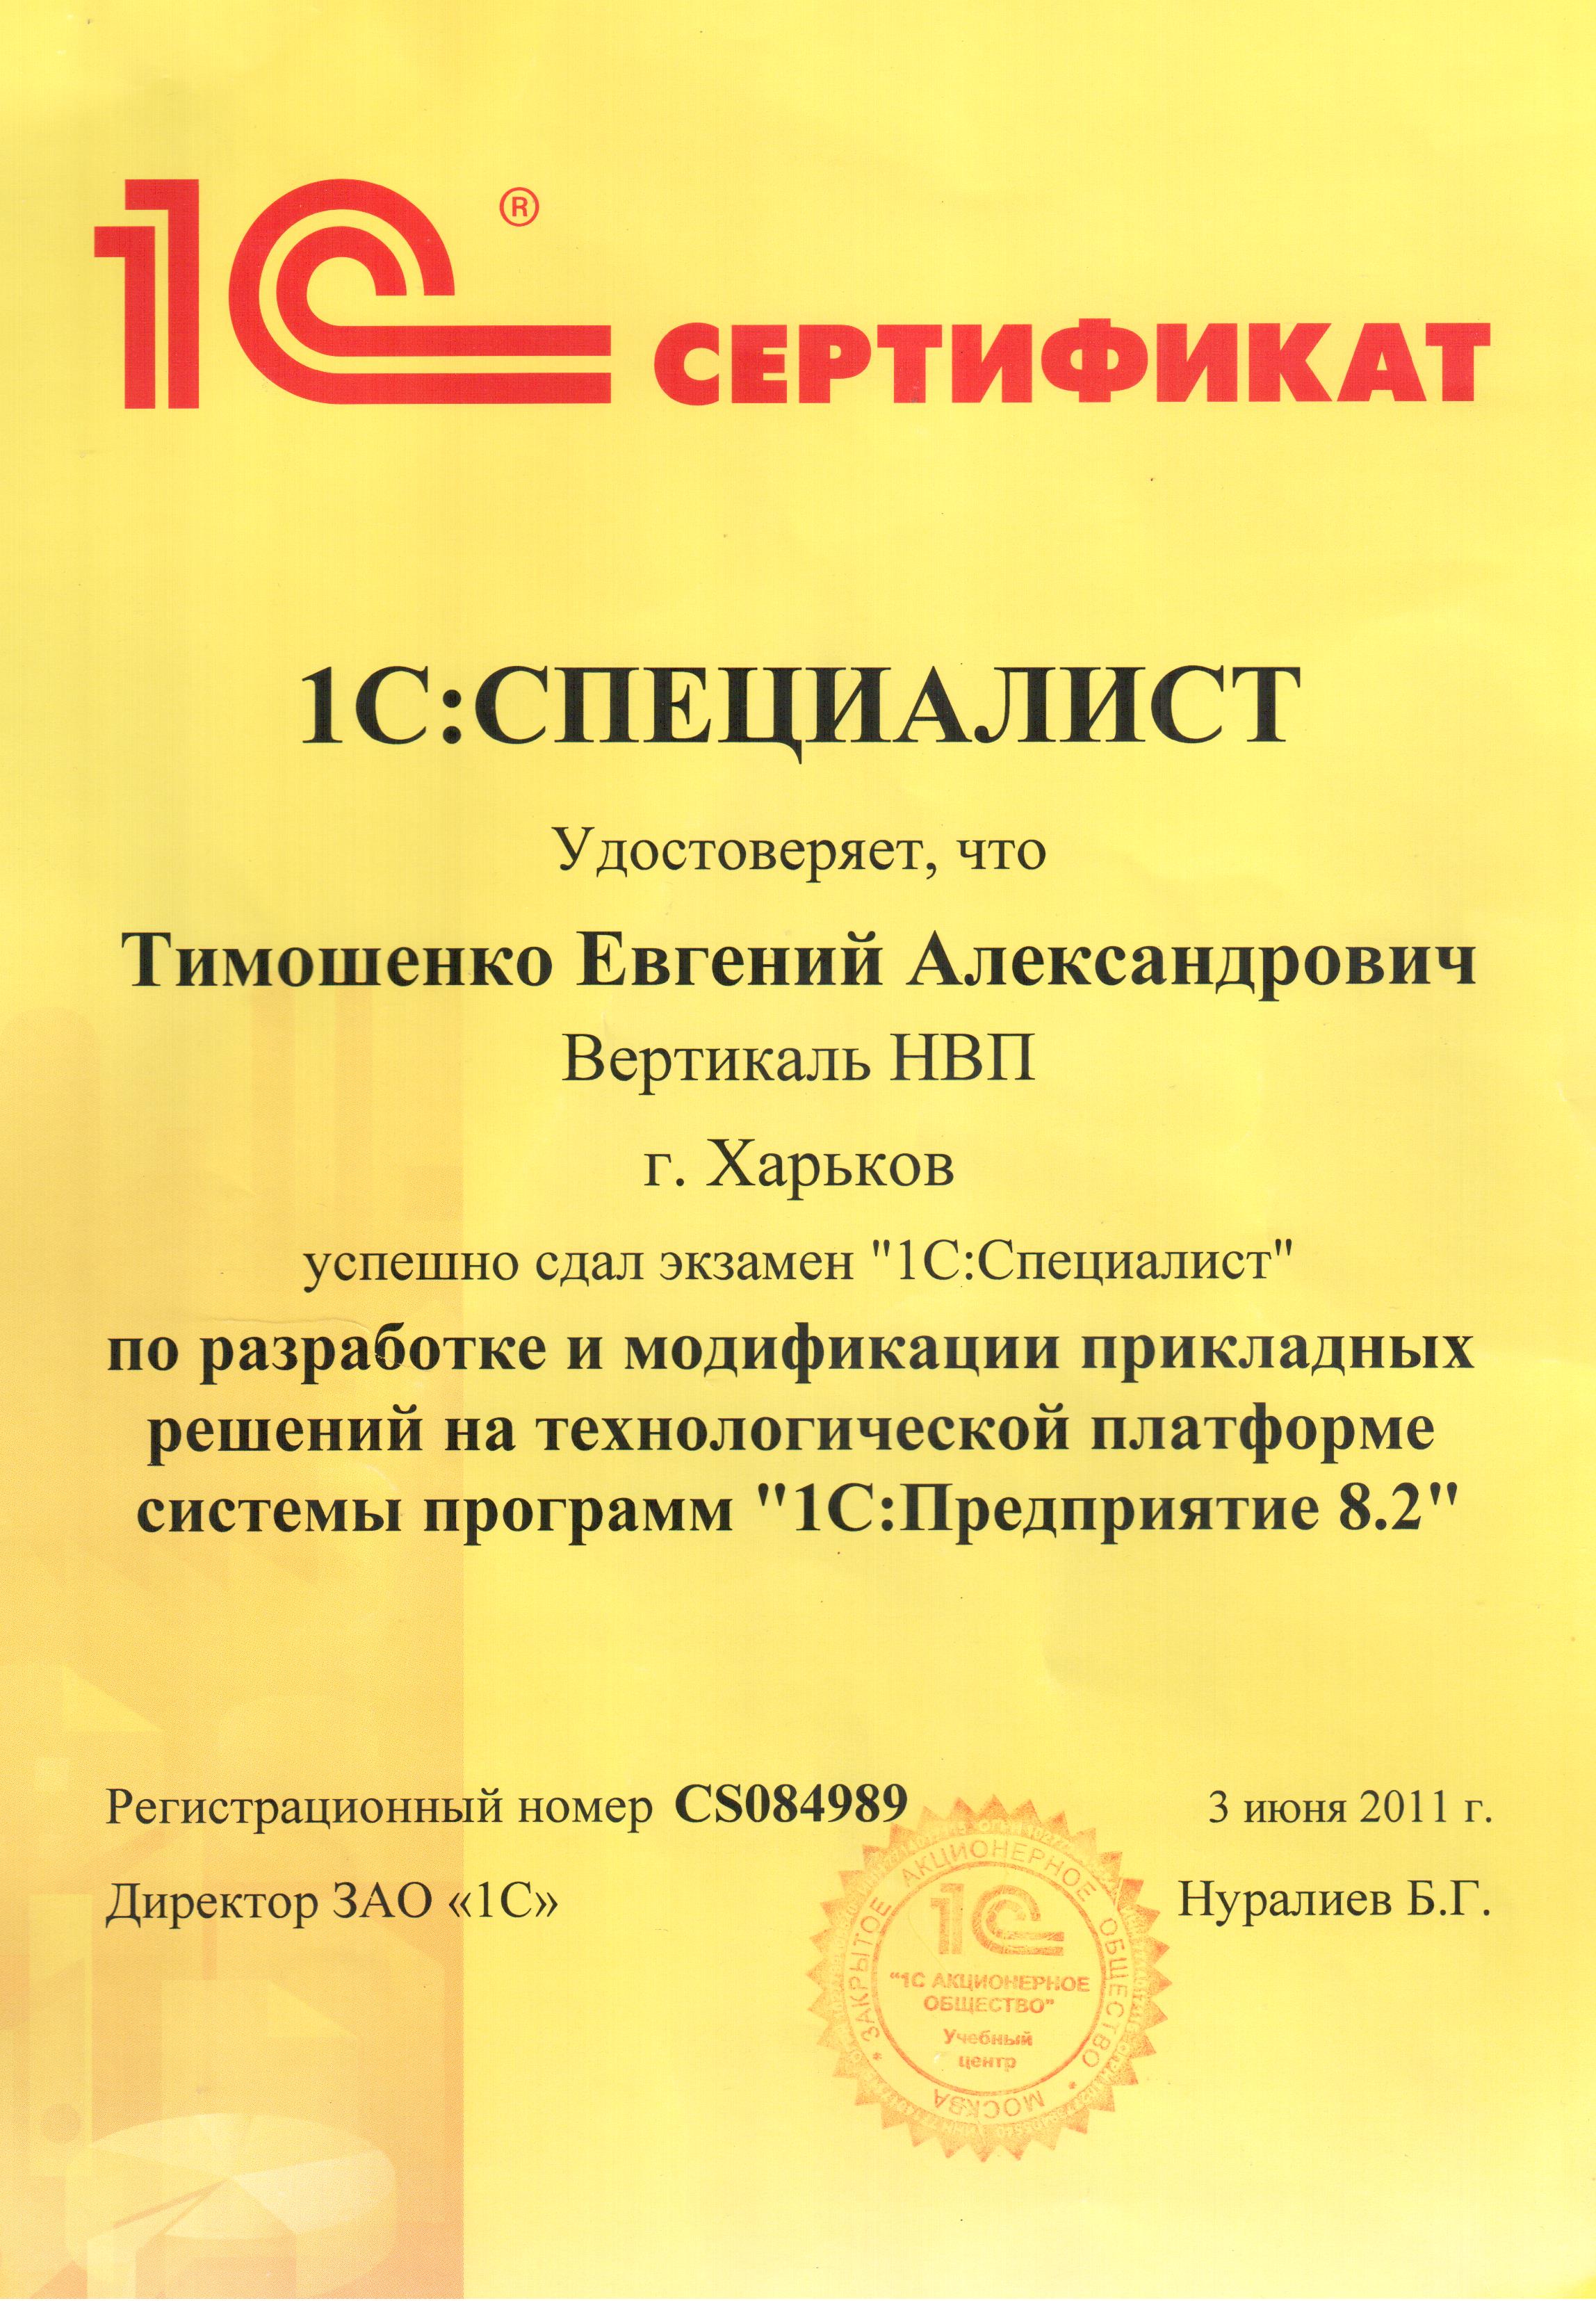 Сертификат 1С:Специалист (Платформа 8.2)